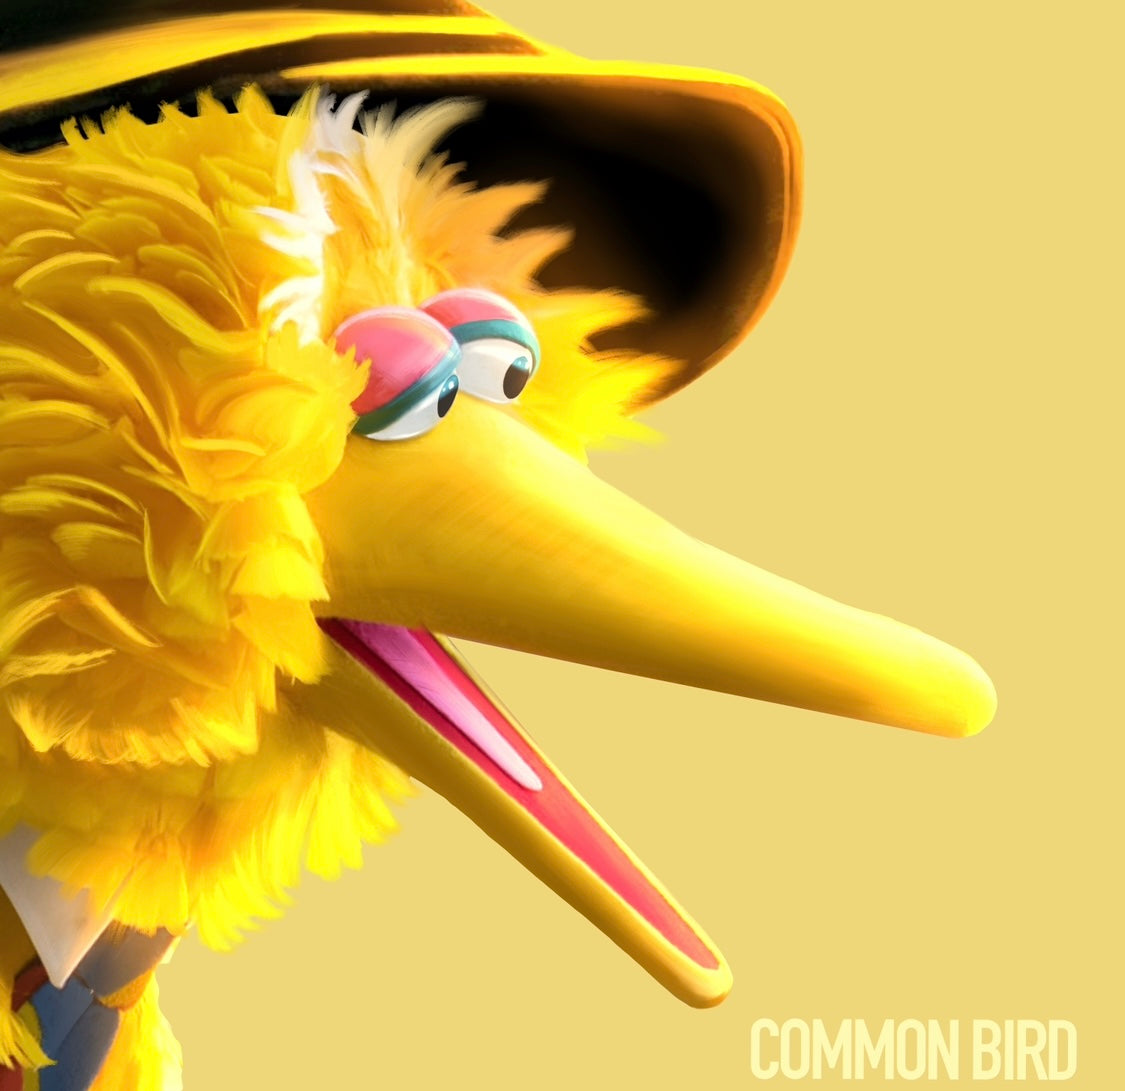 Common Bird